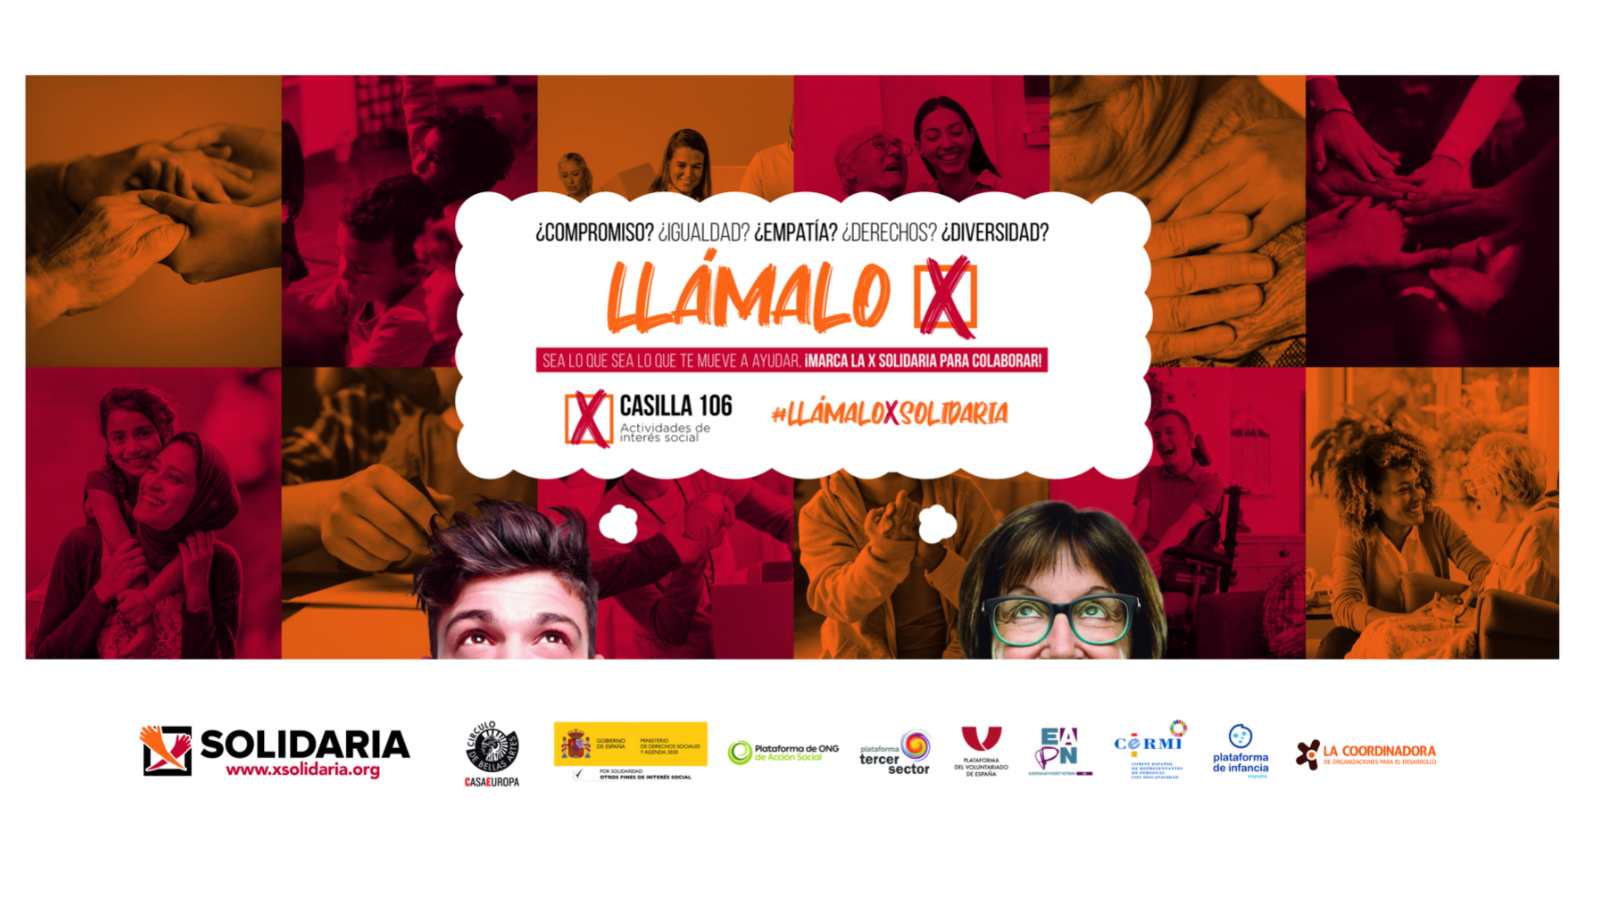 Cartel de la campaña de la X solidaria con muchas fotos de persona y la cabeza de un hombre y una mujer pensando en la X solidaria